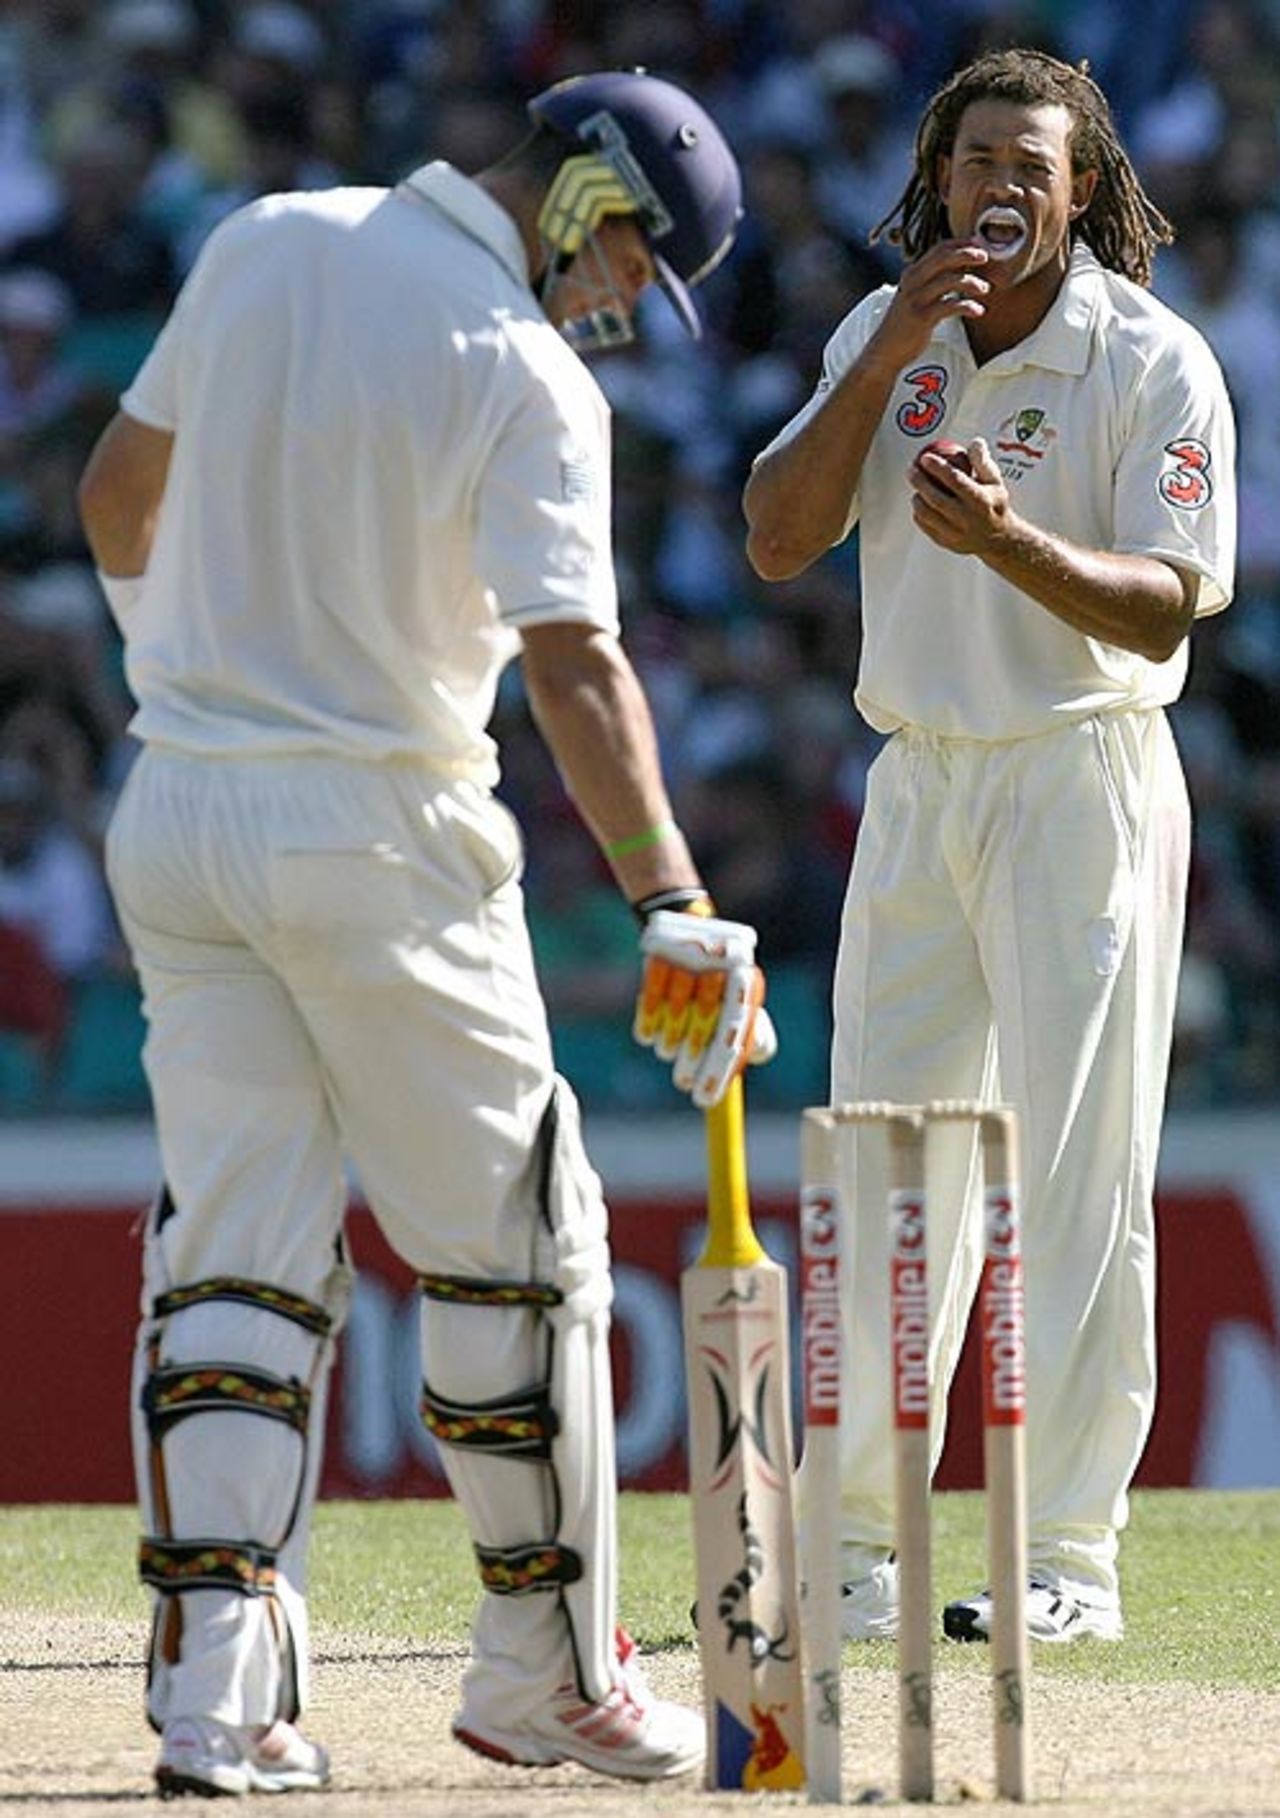 Andrew Symonds tells Kevin Pietersen hes lucky to still be at the crease after a close appeal, Australia v England, 5th Test, Sydney, January 4, 2007